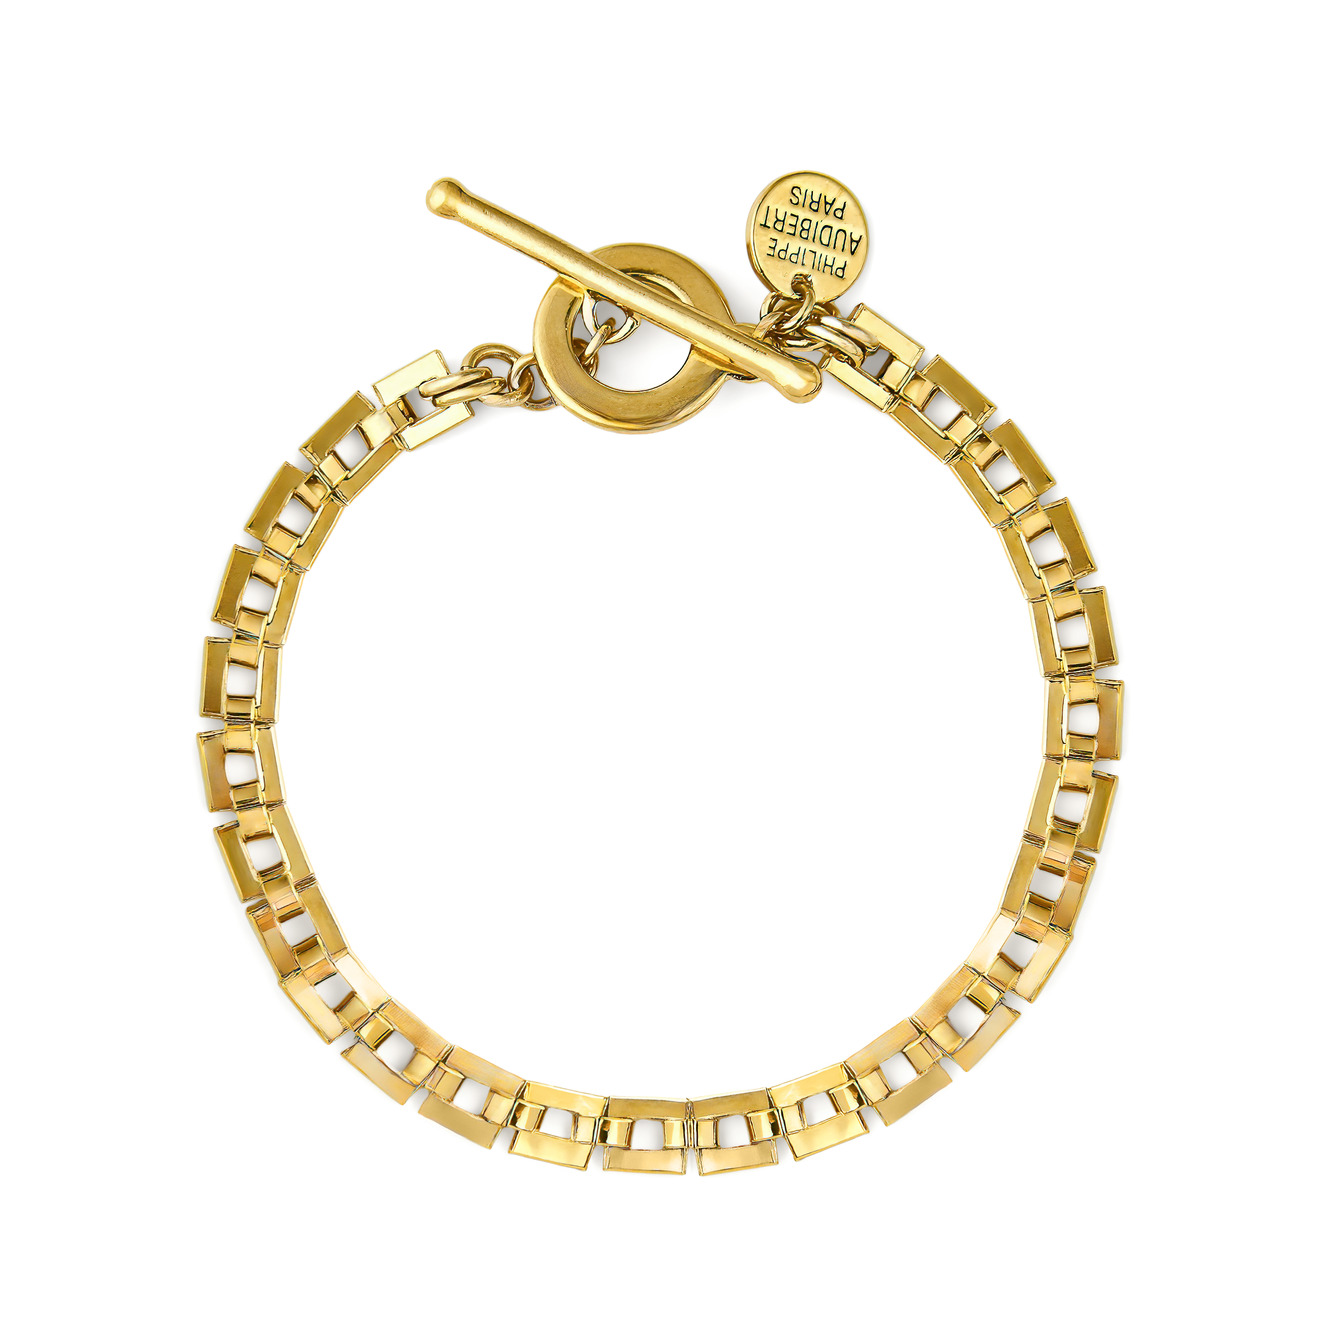 Philippe Audibert Позолоченный браслет-цепь Avner с квадратными звеньями philippe audibert биколорный браслет цепь kaya